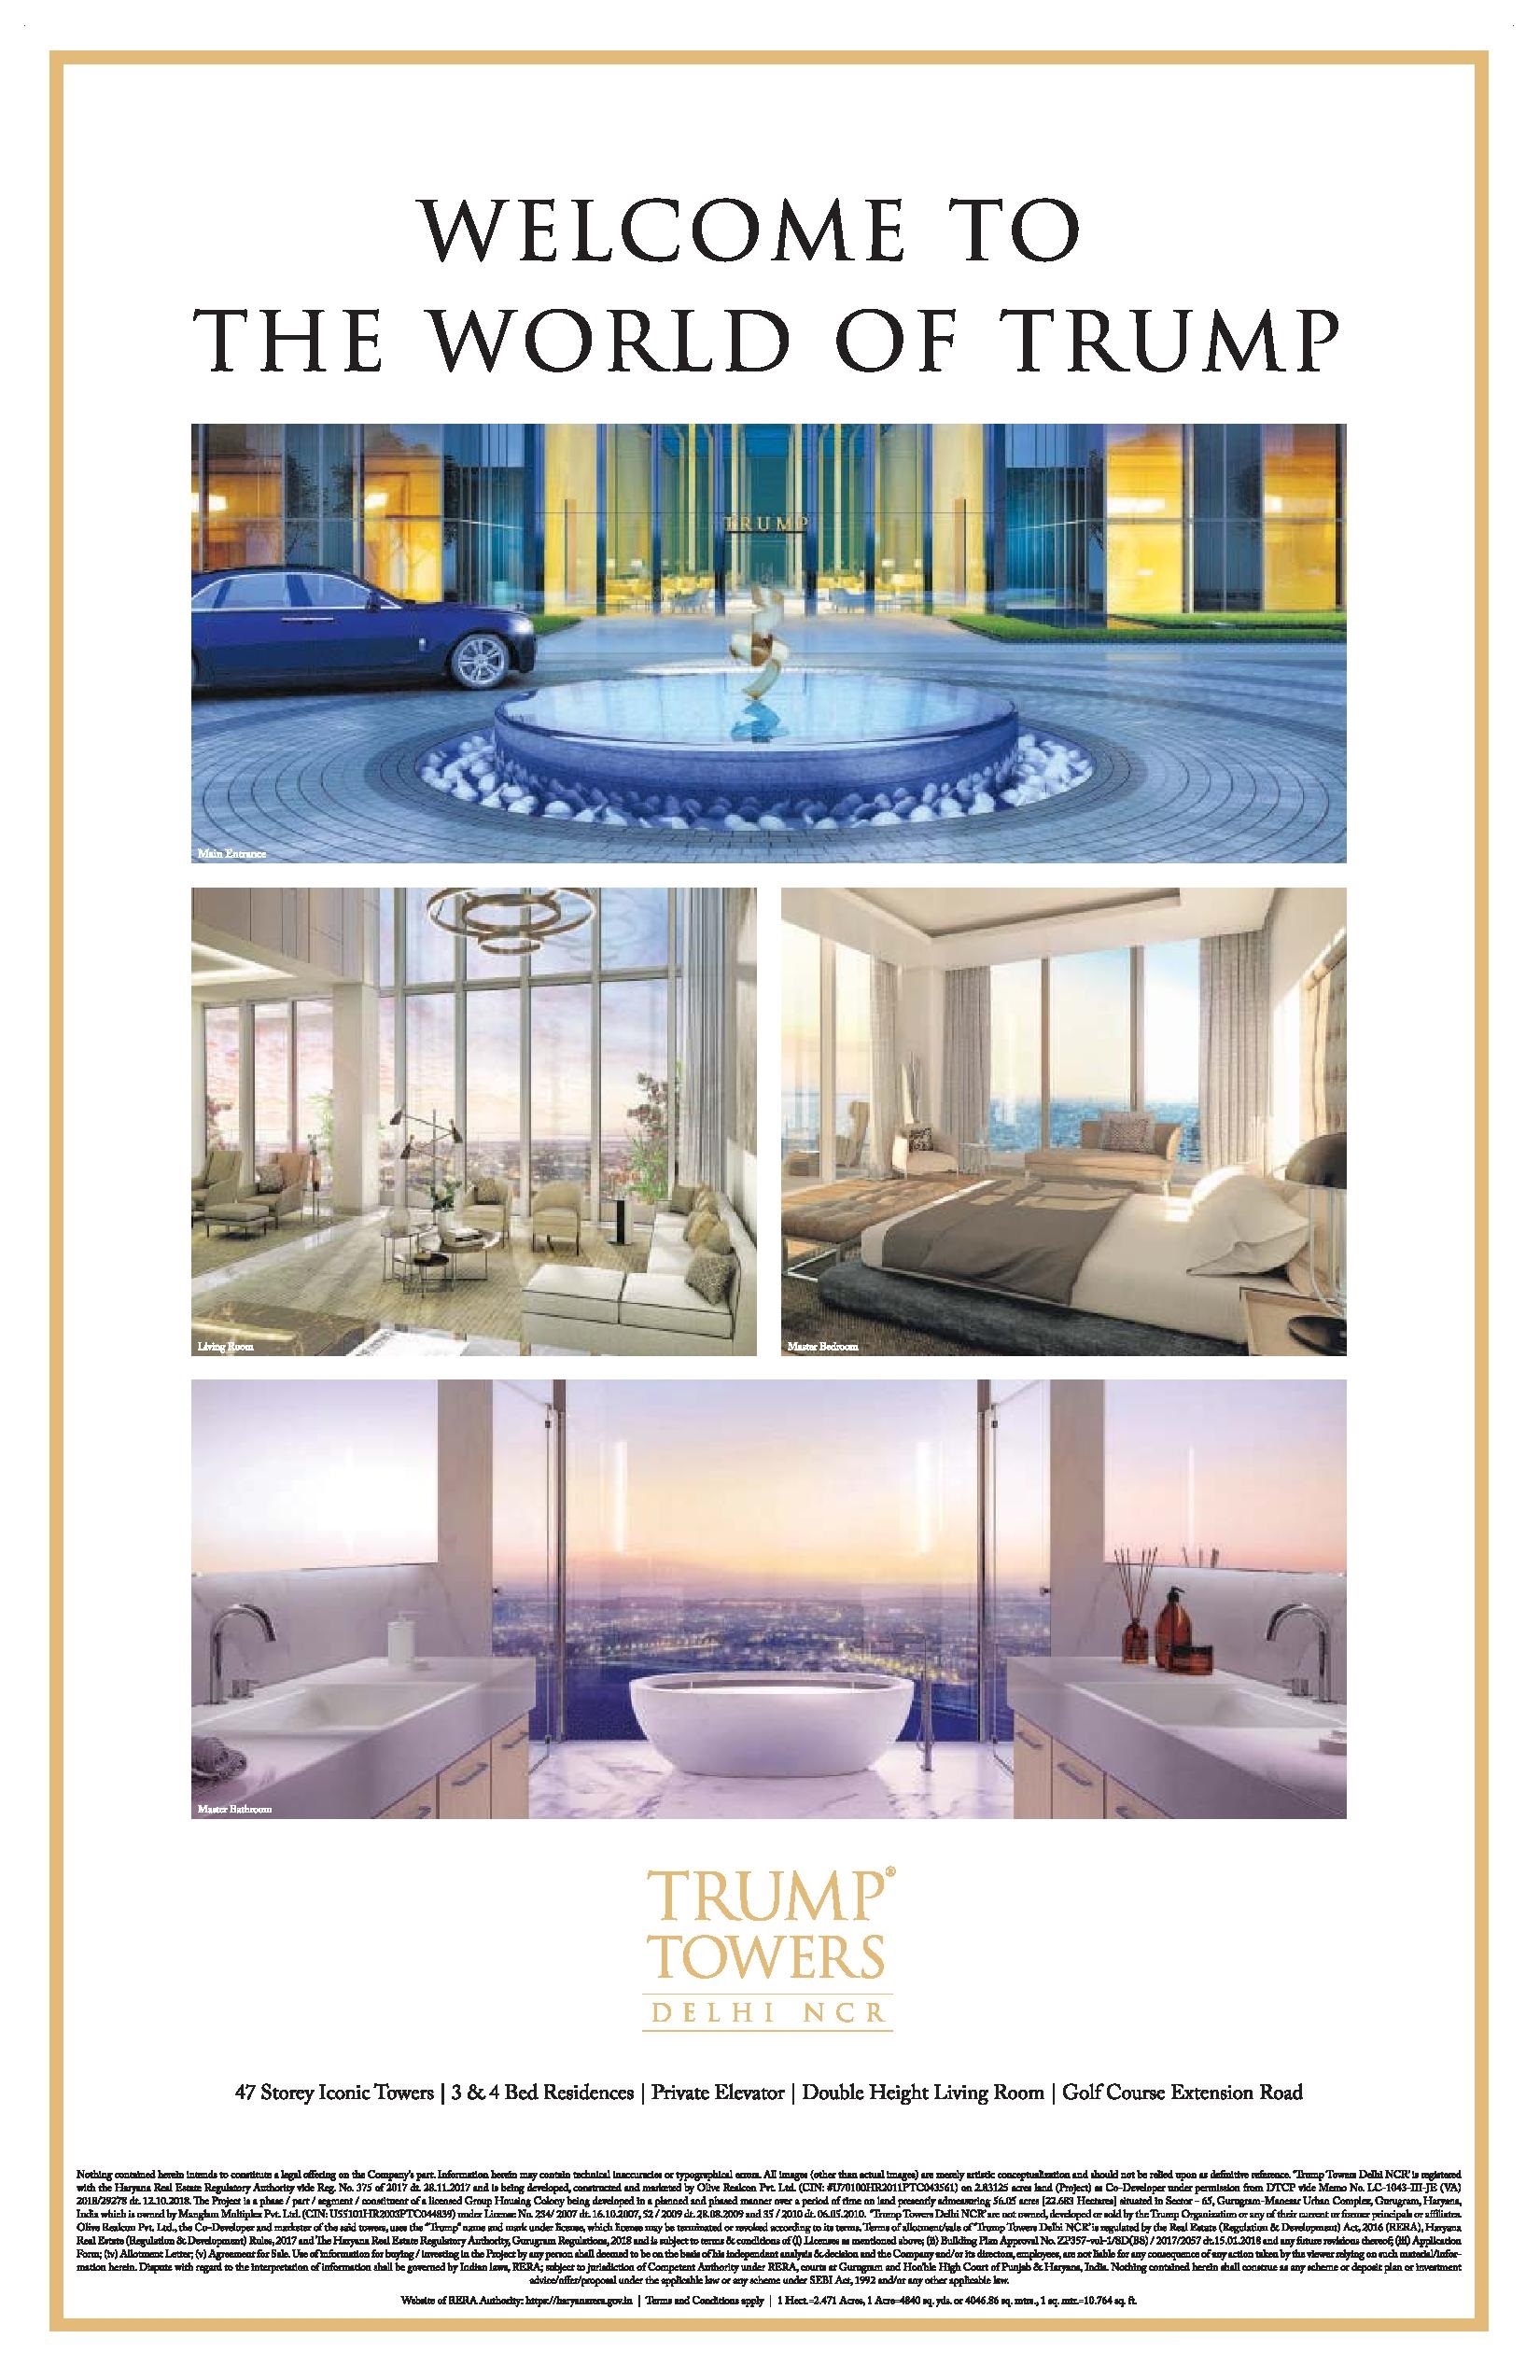 Trump Towers introducing 3 & 4 bedroom residences in Gurgaon Update